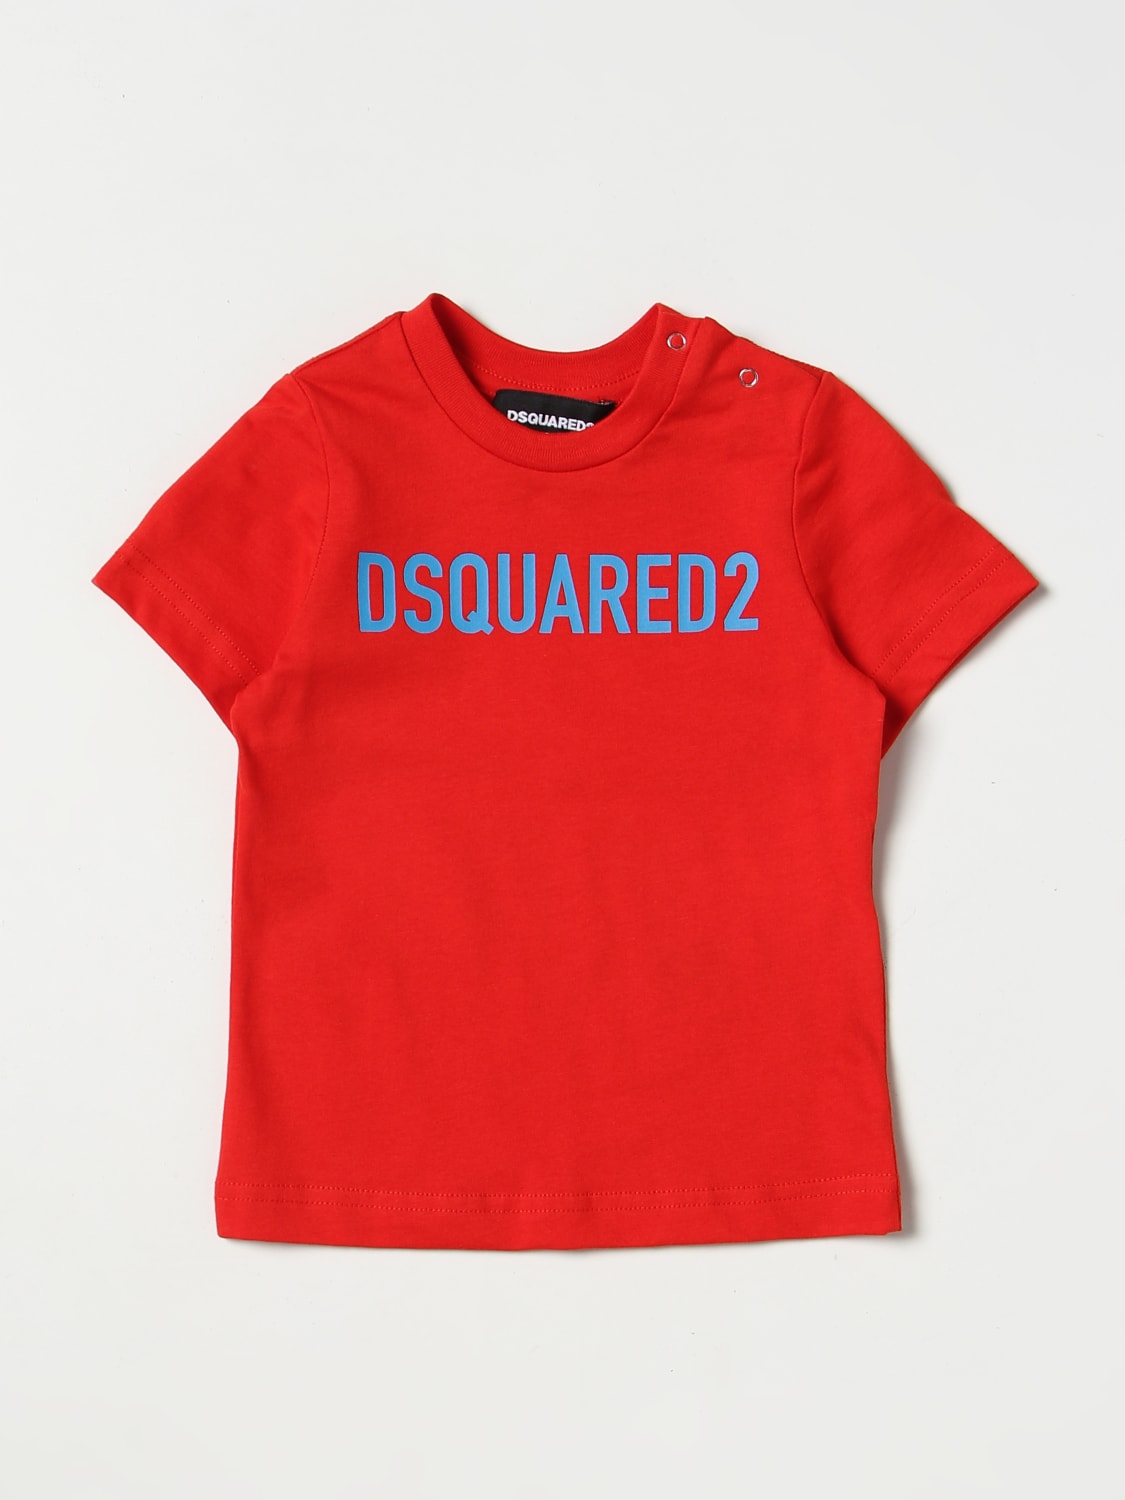 Schuldenaar Wees Onzeker DSQUARED2 JUNIOR: t-shirt for baby - Red | Dsquared2 Junior t-shirt  DQ1781D0A4C online on GIGLIO.COM